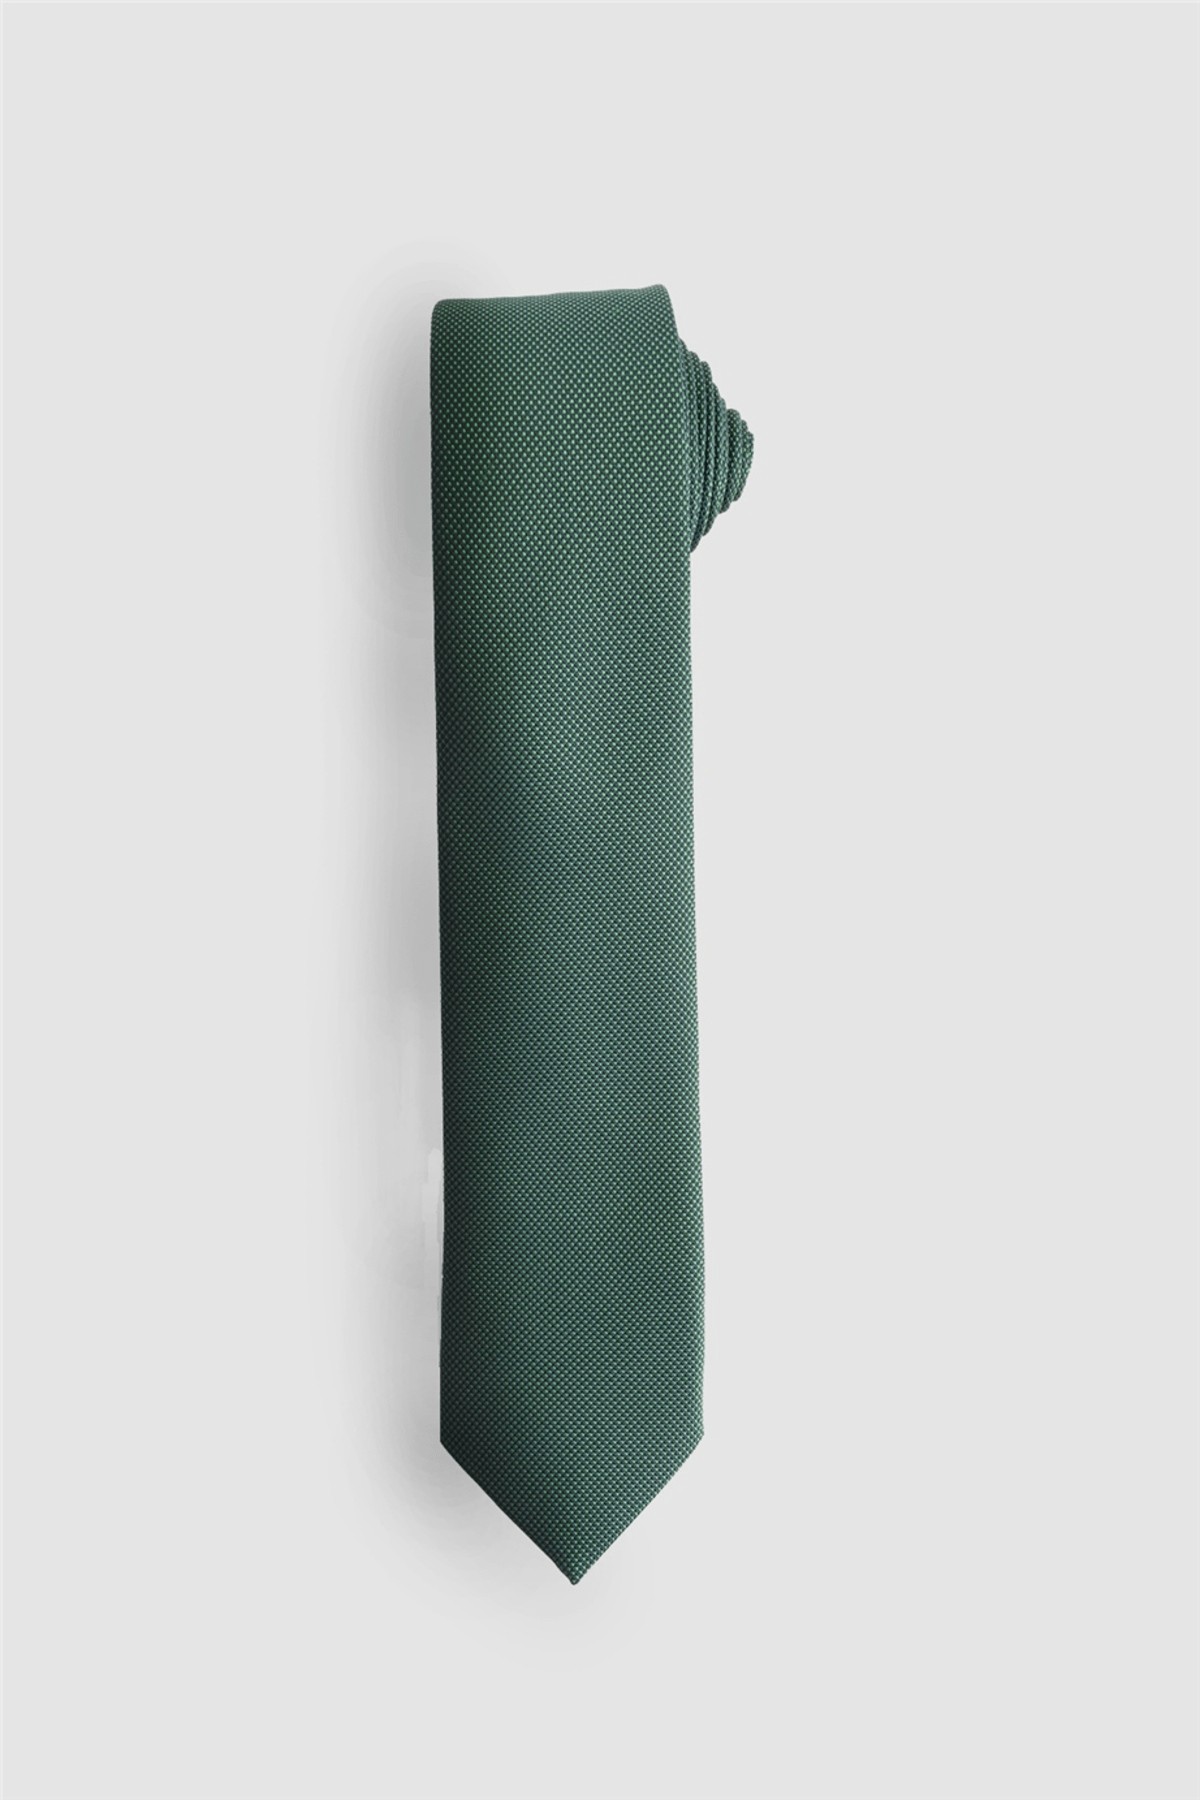 کراوات سبز مردانه ساده تودورز با دستمال جیبی